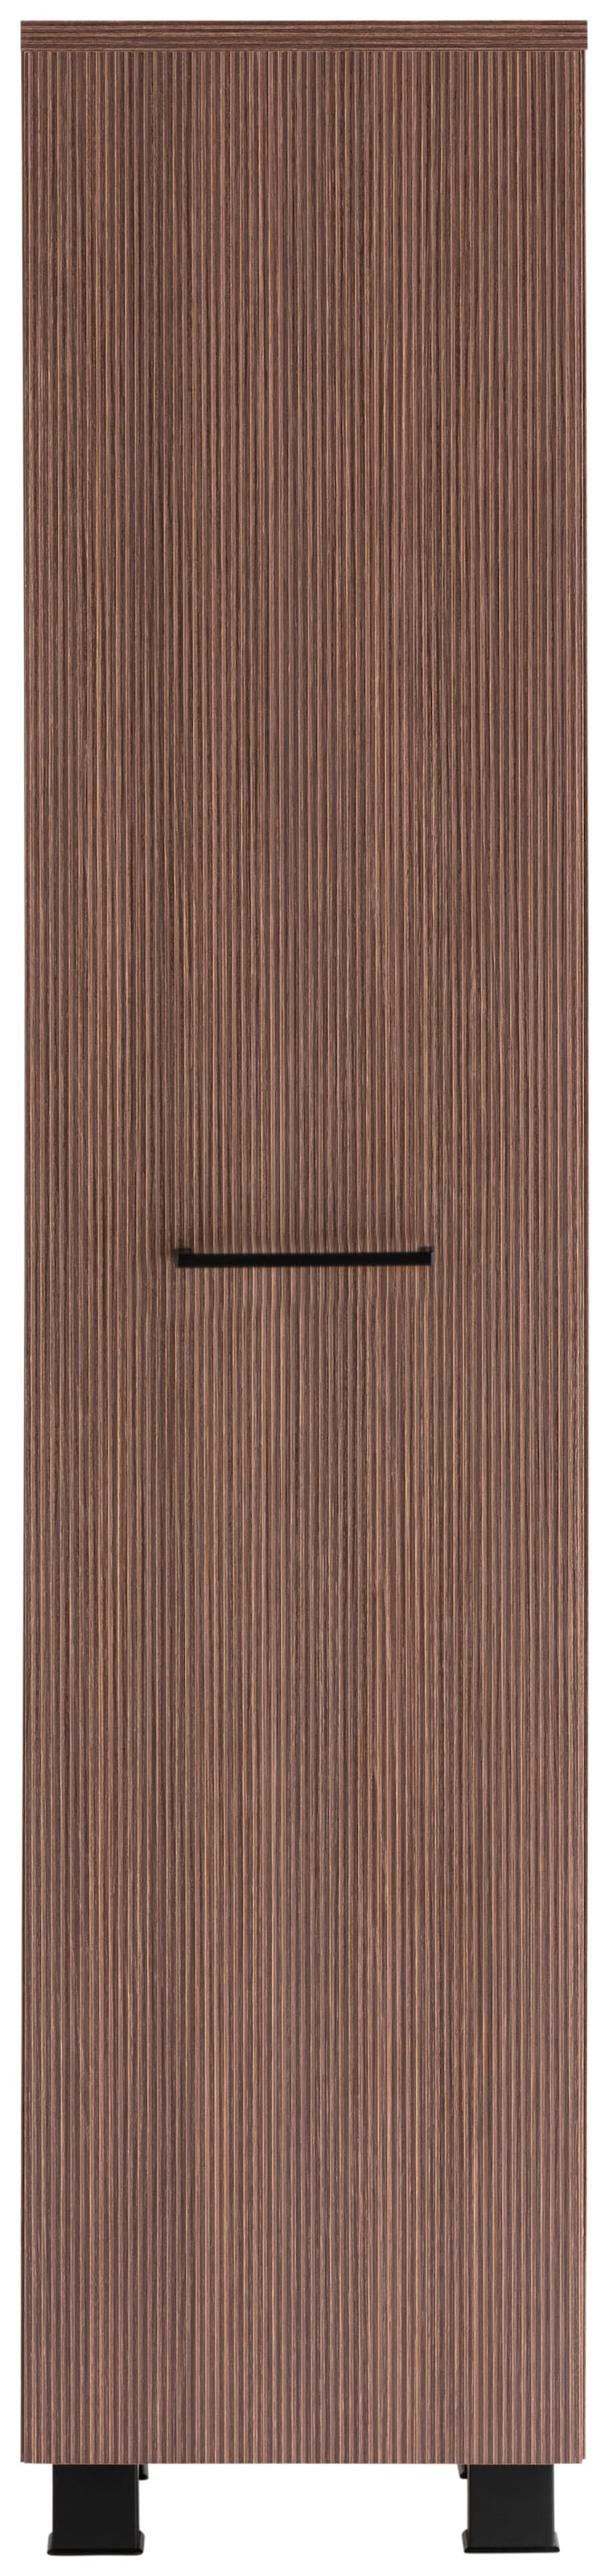 HELD MÖBEL Midischrank »Trento, verschiedene Ausführungen und Farben«, Badmöbel, Breite 30 cm, 1 Tür, Made in Germany